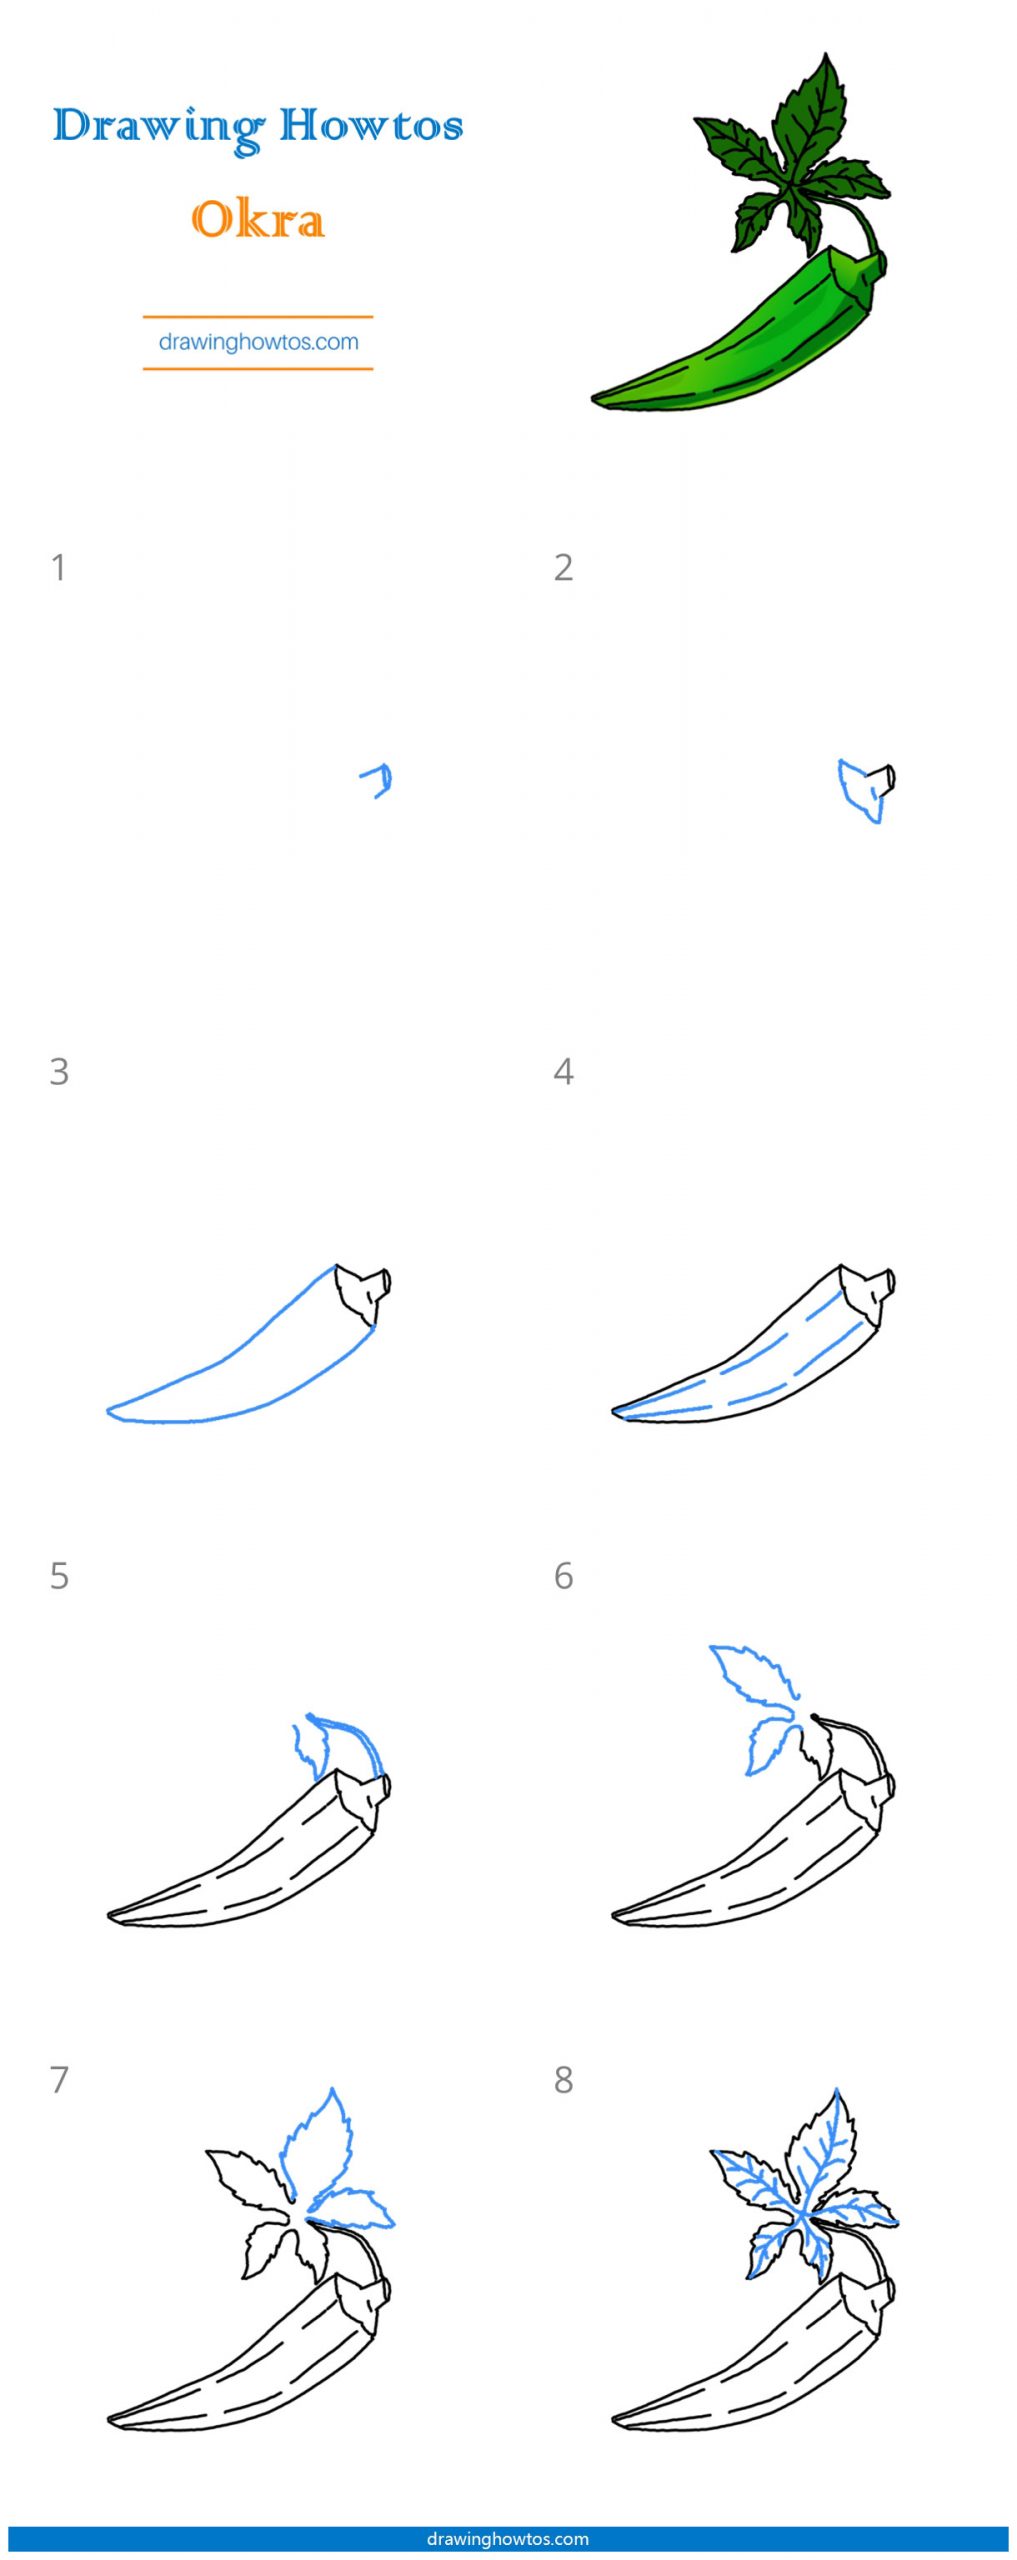 How to Draw Okra Step by Step